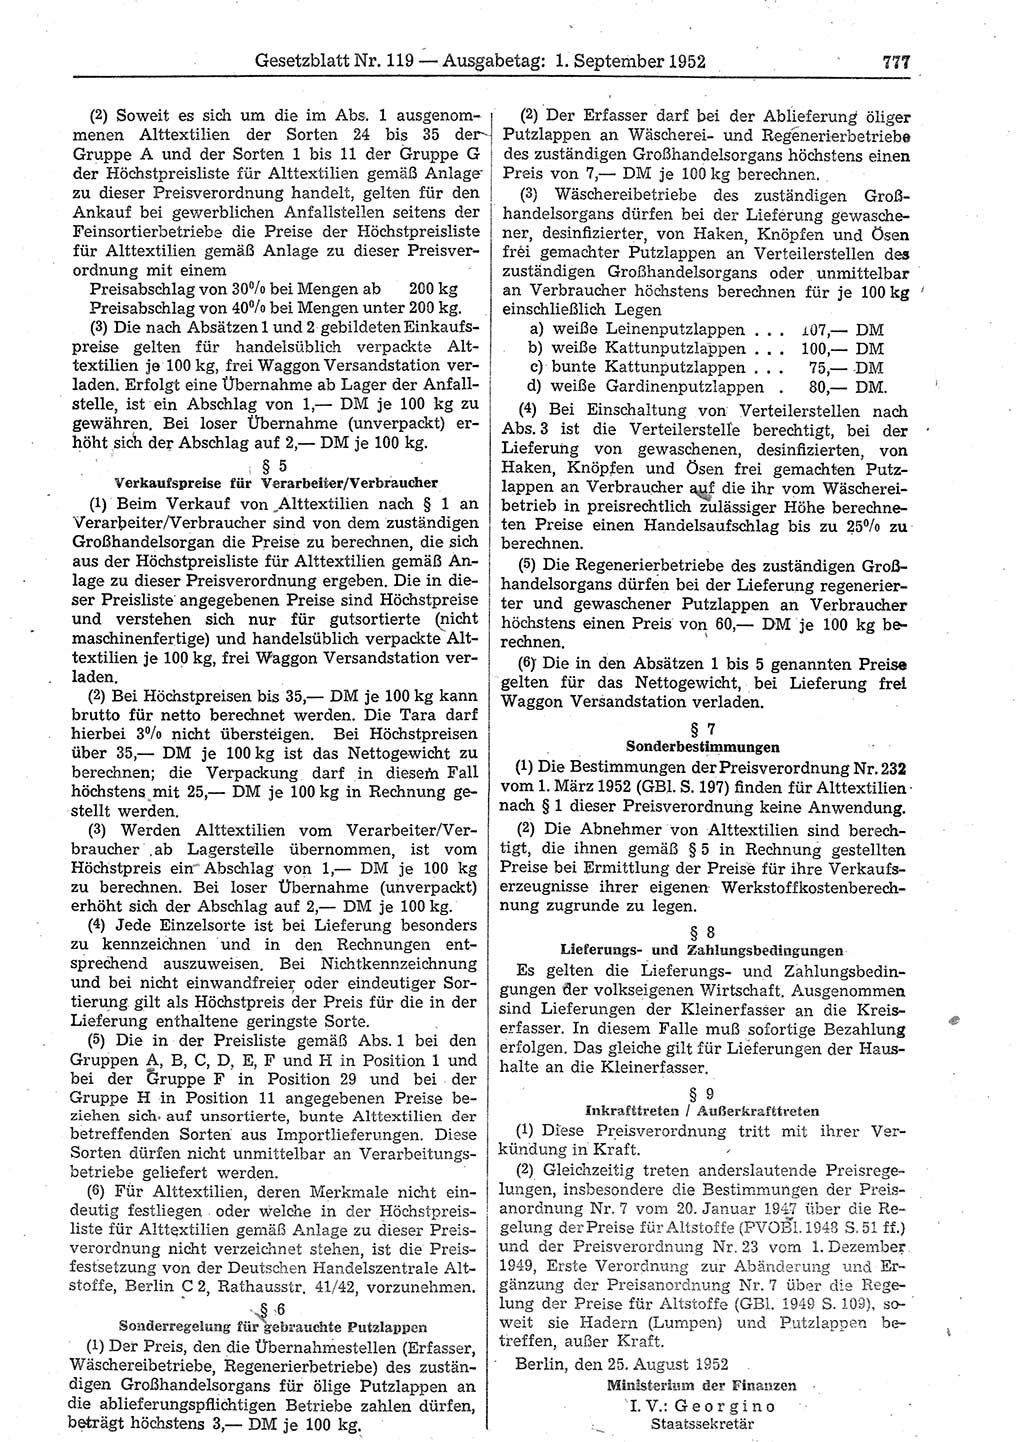 Gesetzblatt (GBl.) der Deutschen Demokratischen Republik (DDR) 1952, Seite 777 (GBl. DDR 1952, S. 777)